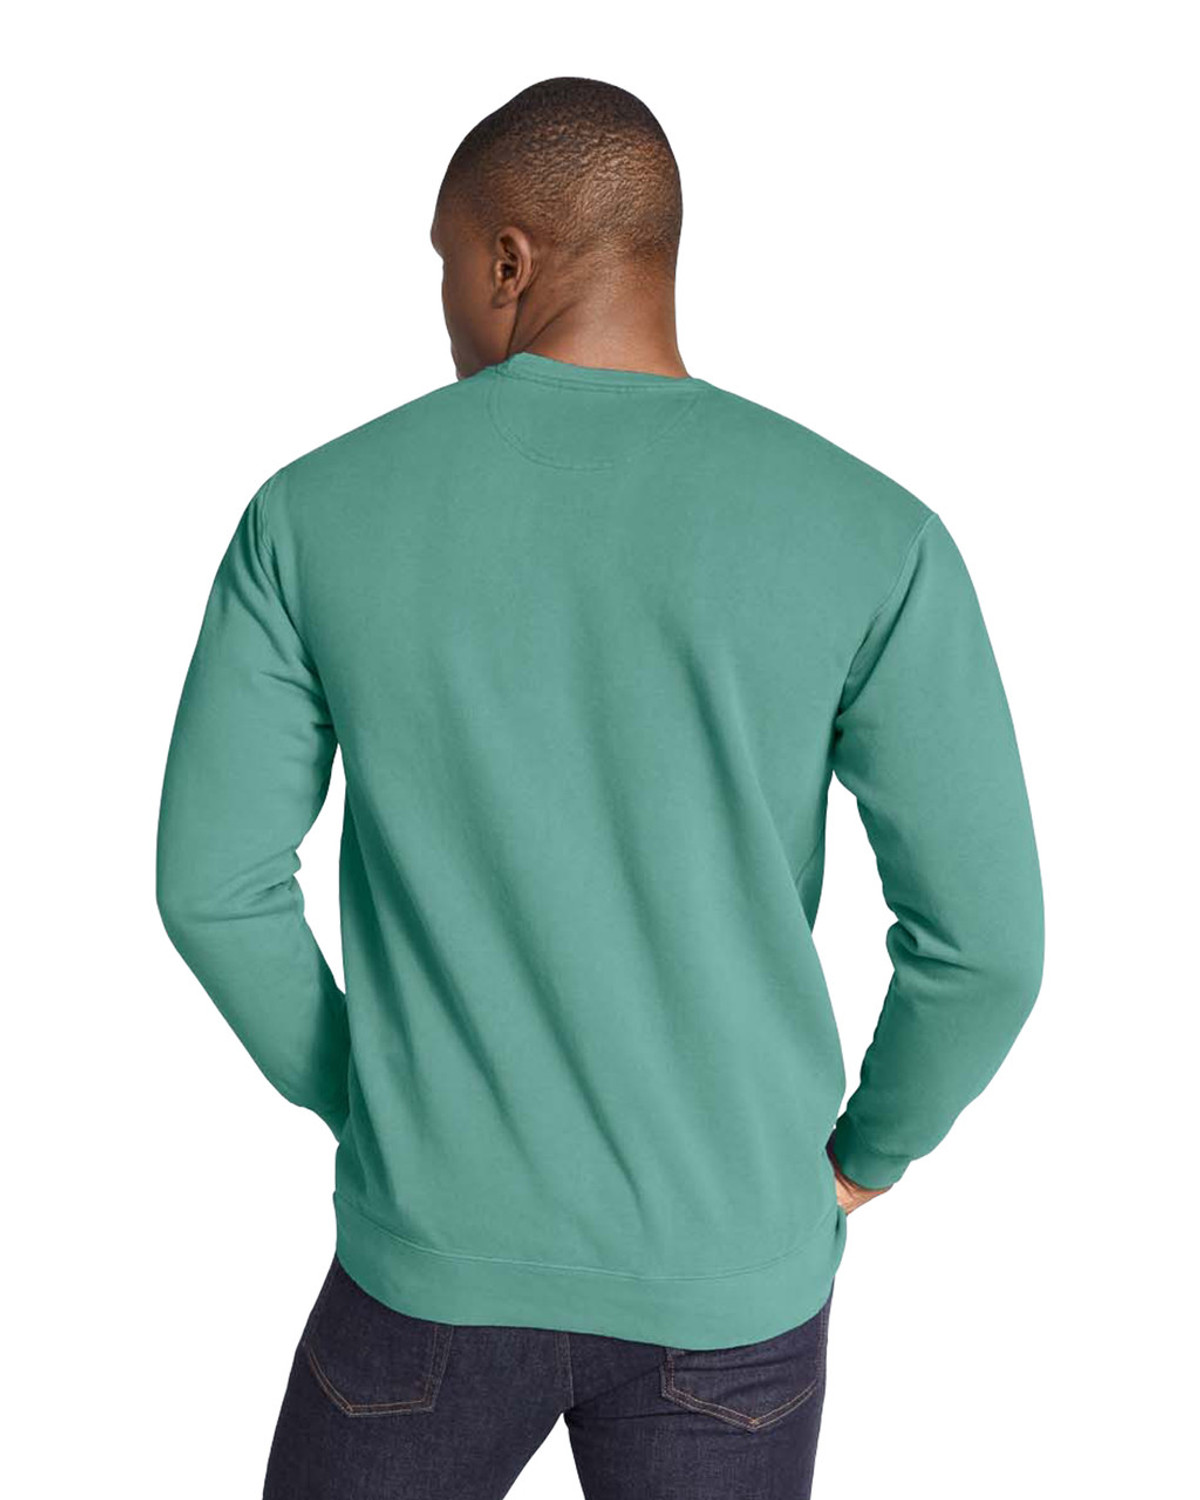 Comfort Colors 1566 Crewneck Sweatshirt 